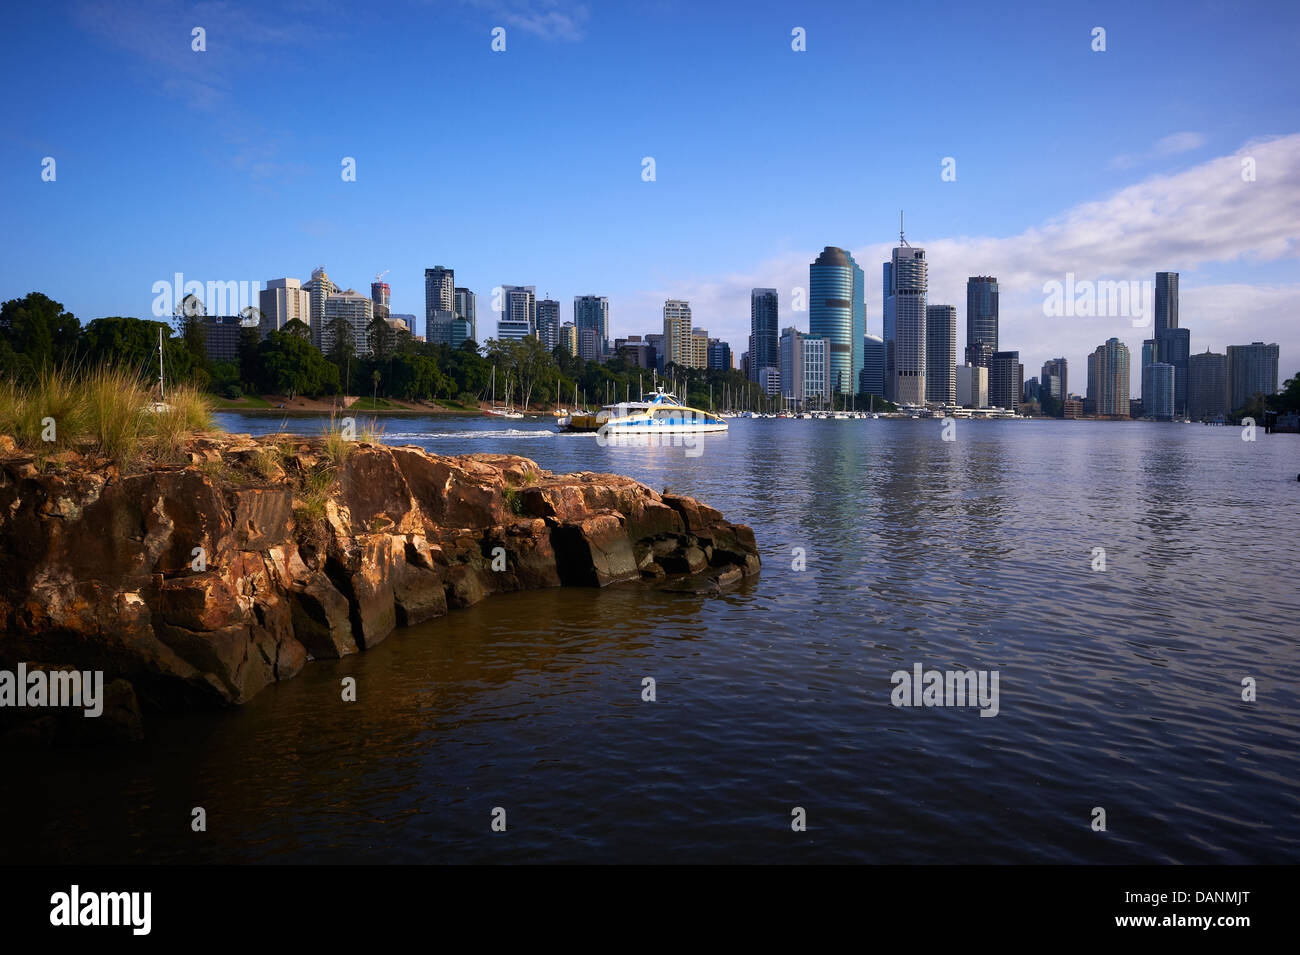 El distrito central de negocios de Brisbane & citycat ferry Foto de stock